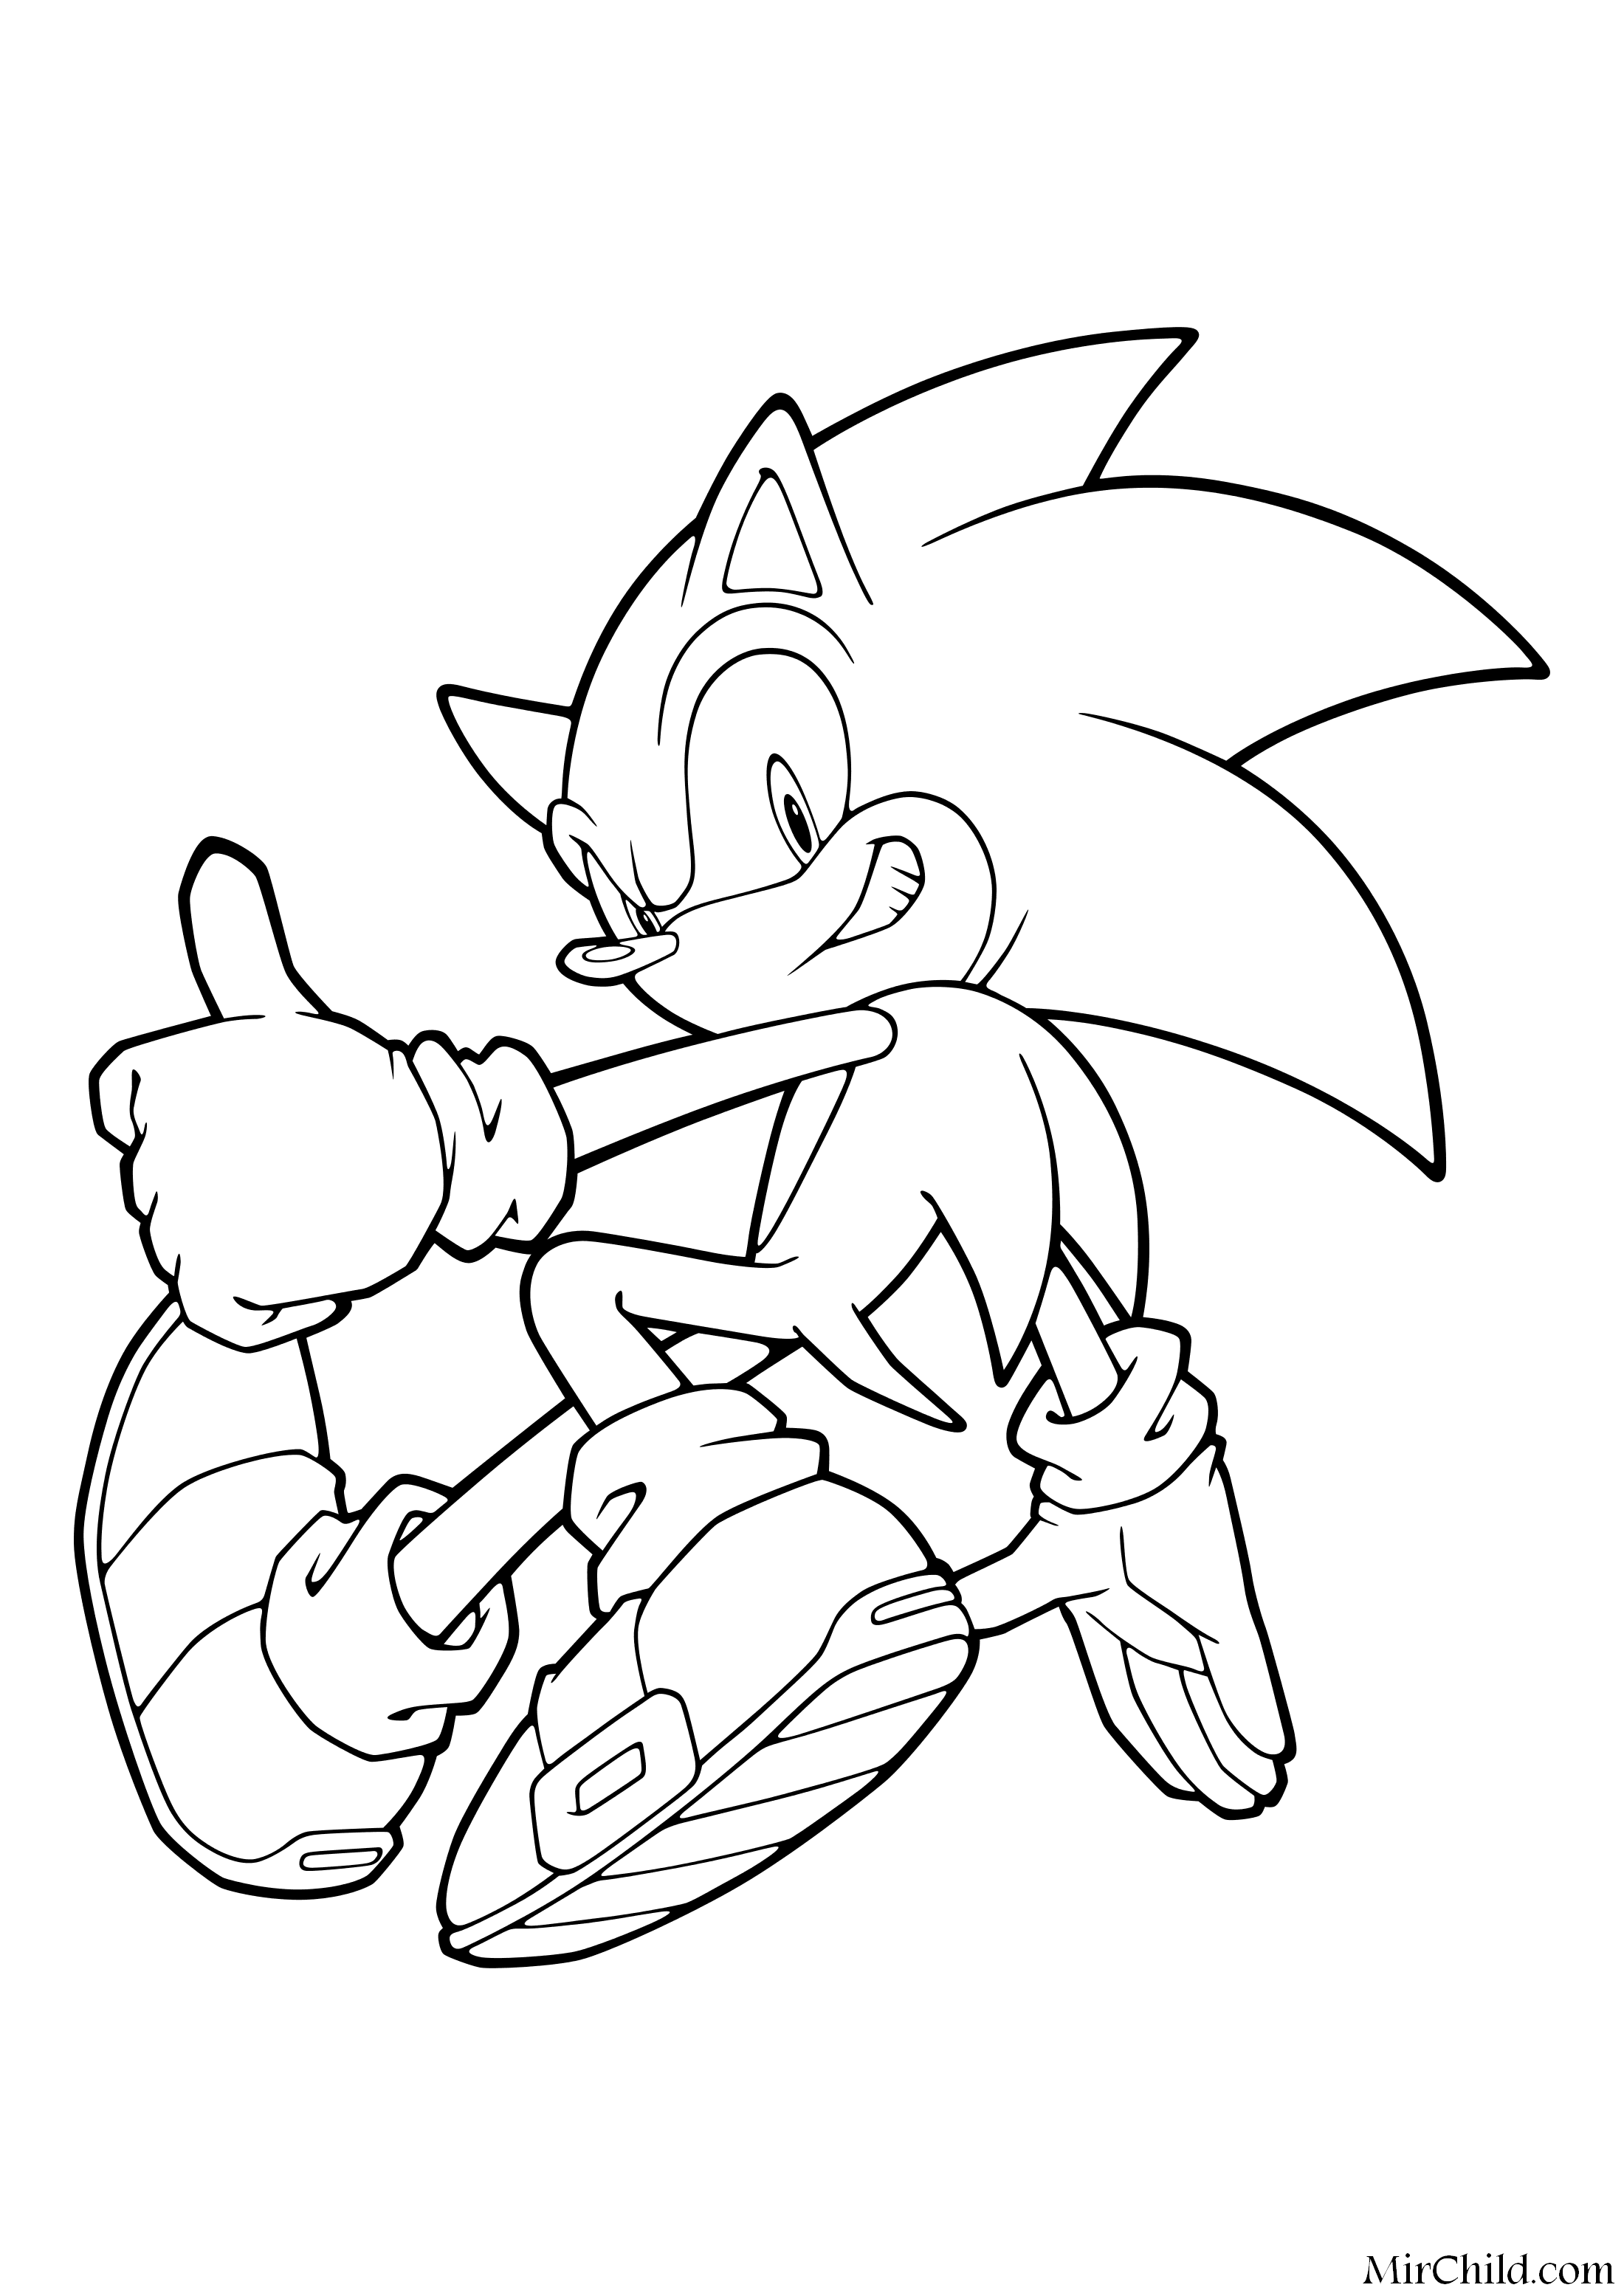 Раскраска - Sonic the Hedgehog - Ёж Соник способен безумно быстро бегать.